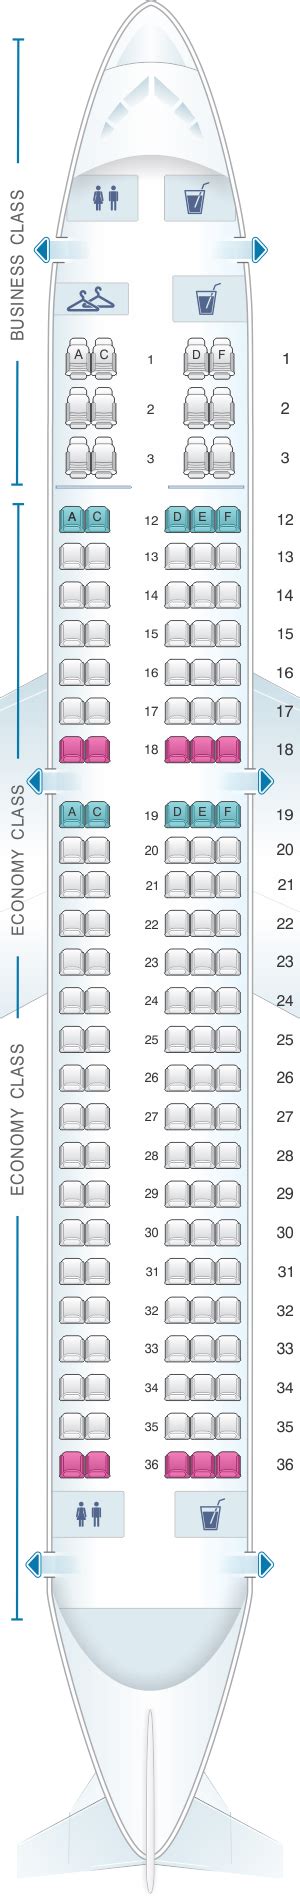 Air Canada A Seat Map Sexiz Pix